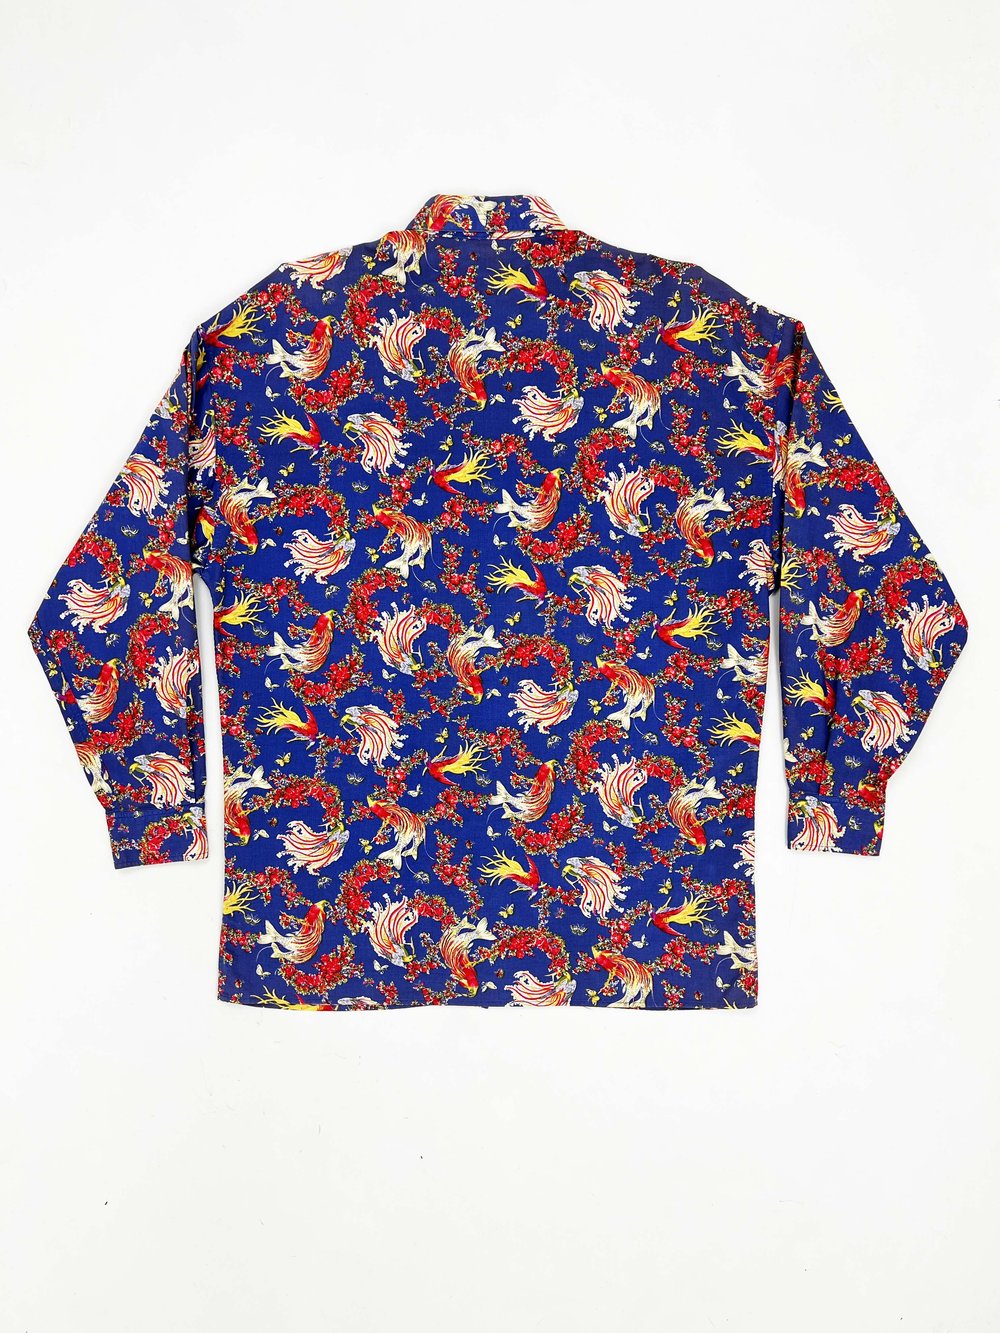 Gianni Versace Versus 90s bird of paradise print shirt — JAMES VELORIA